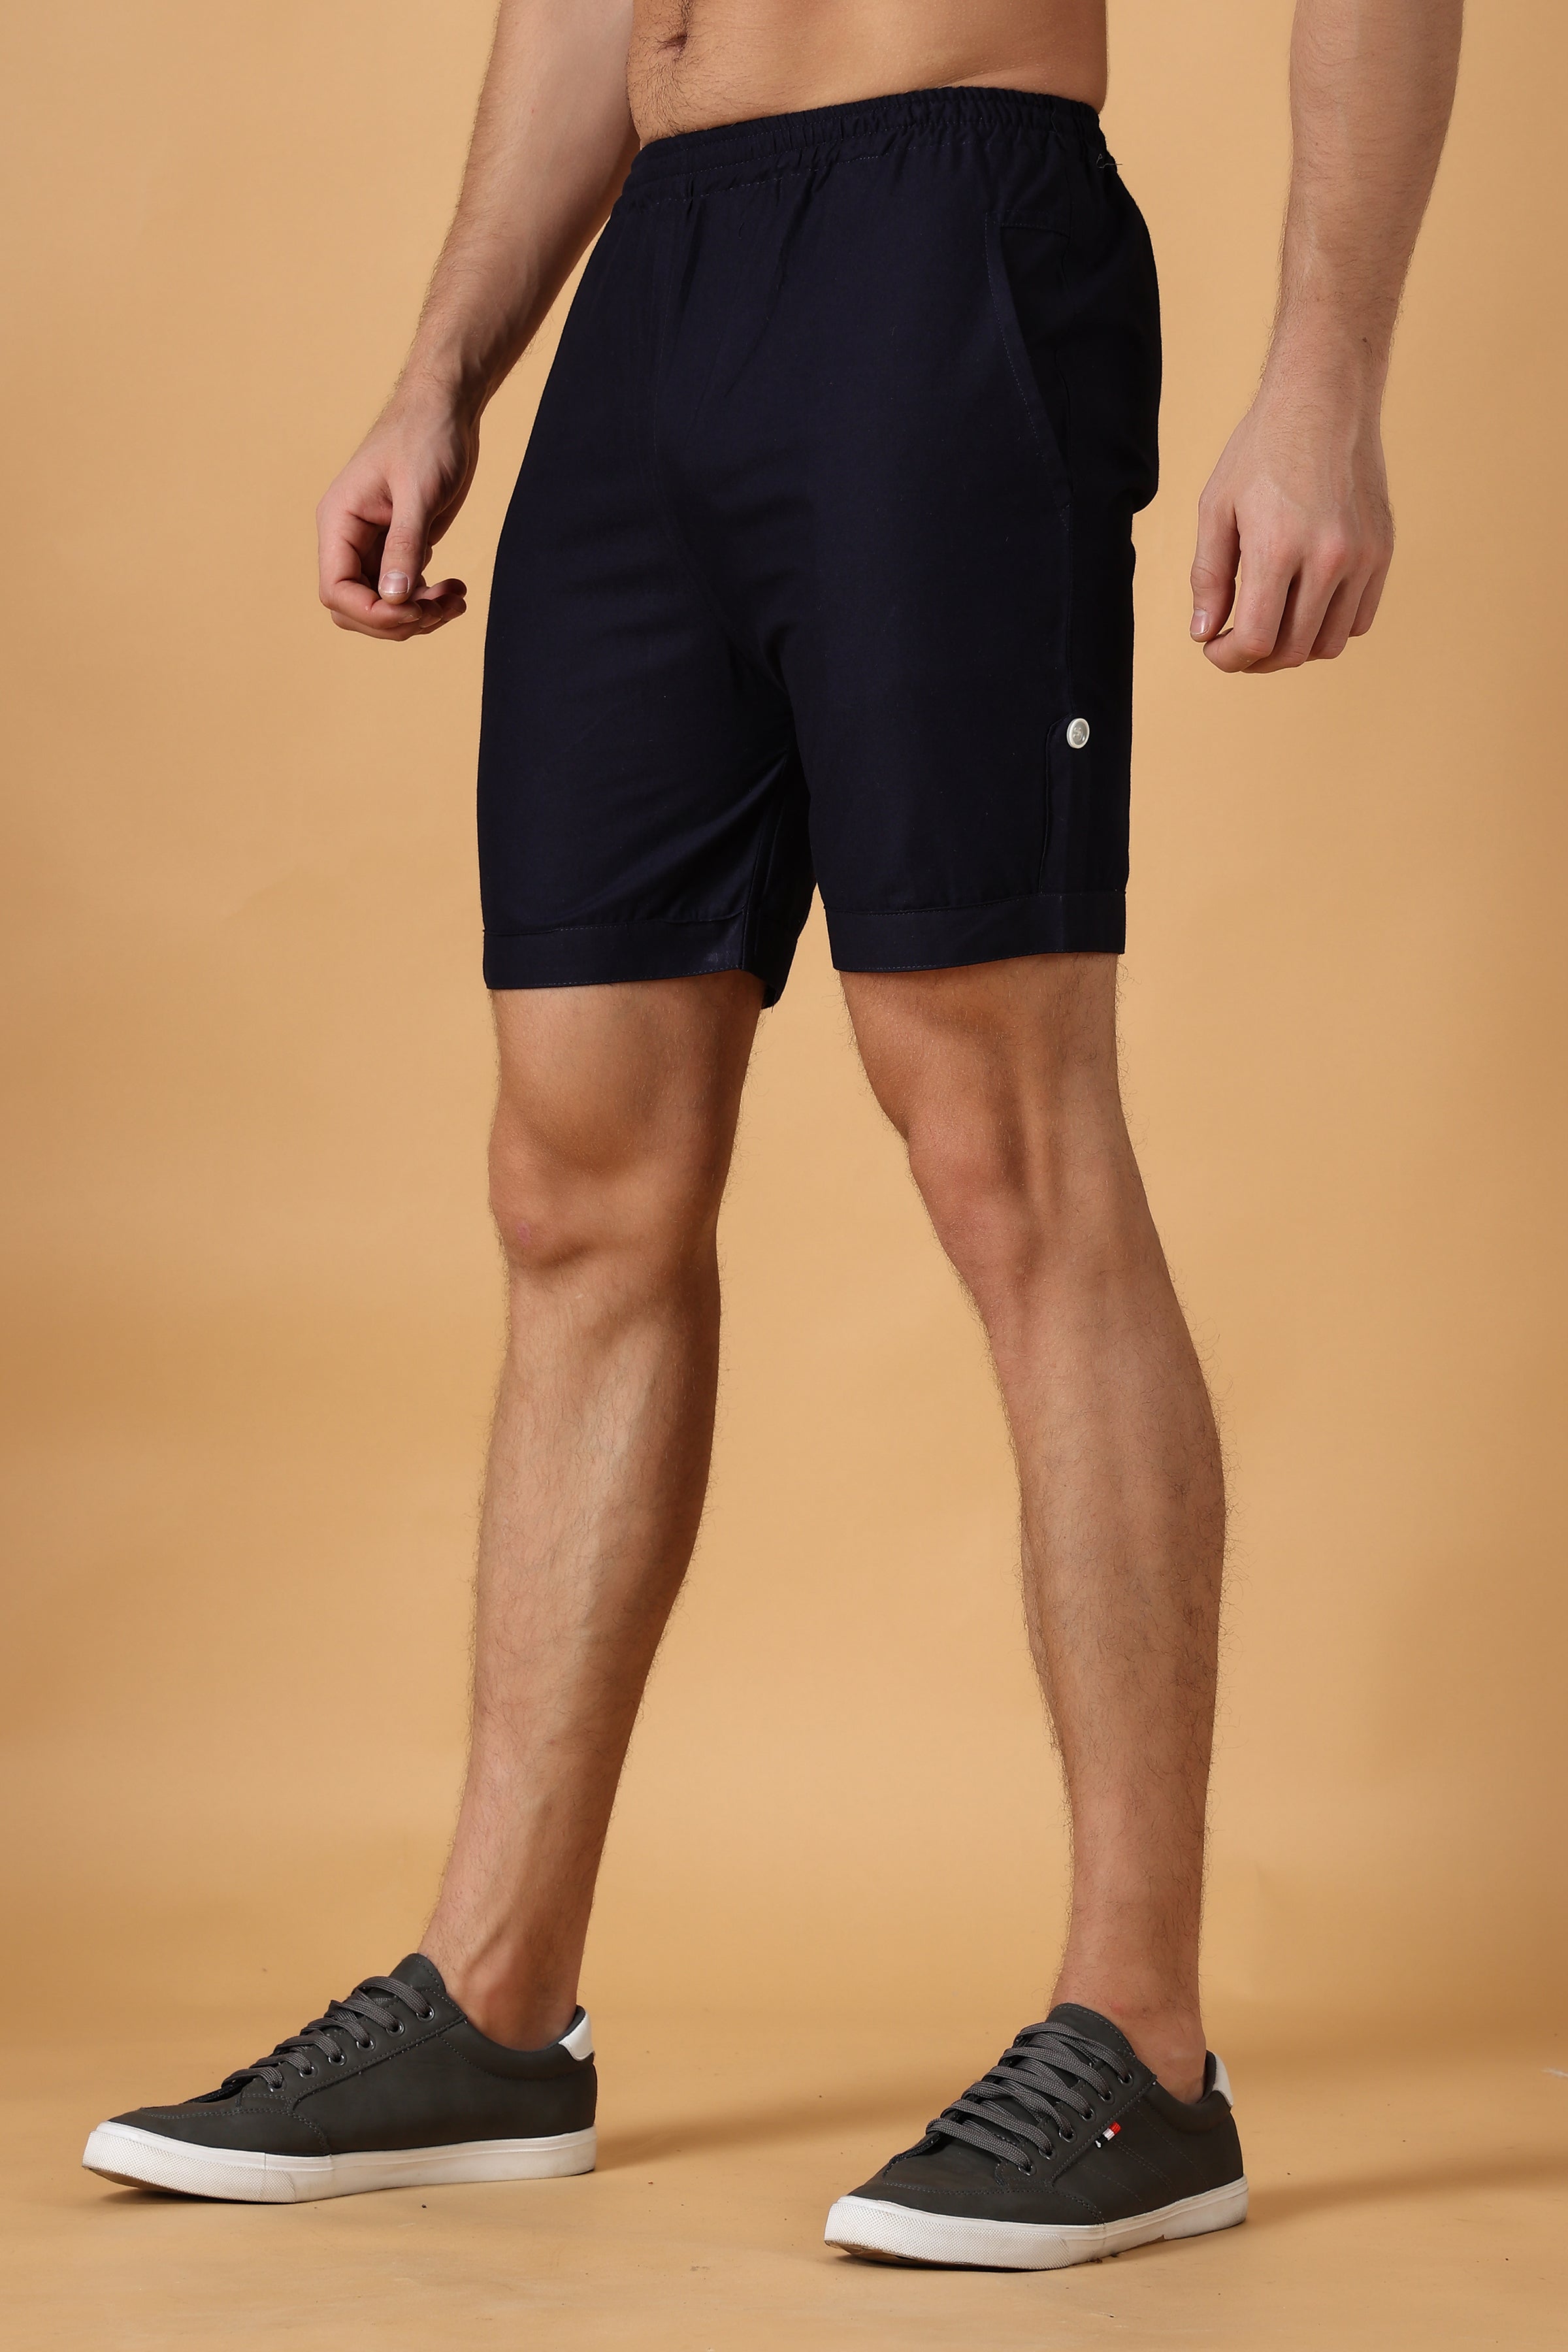 Trendy 34th Shorts Capri for Men Black WORGCART